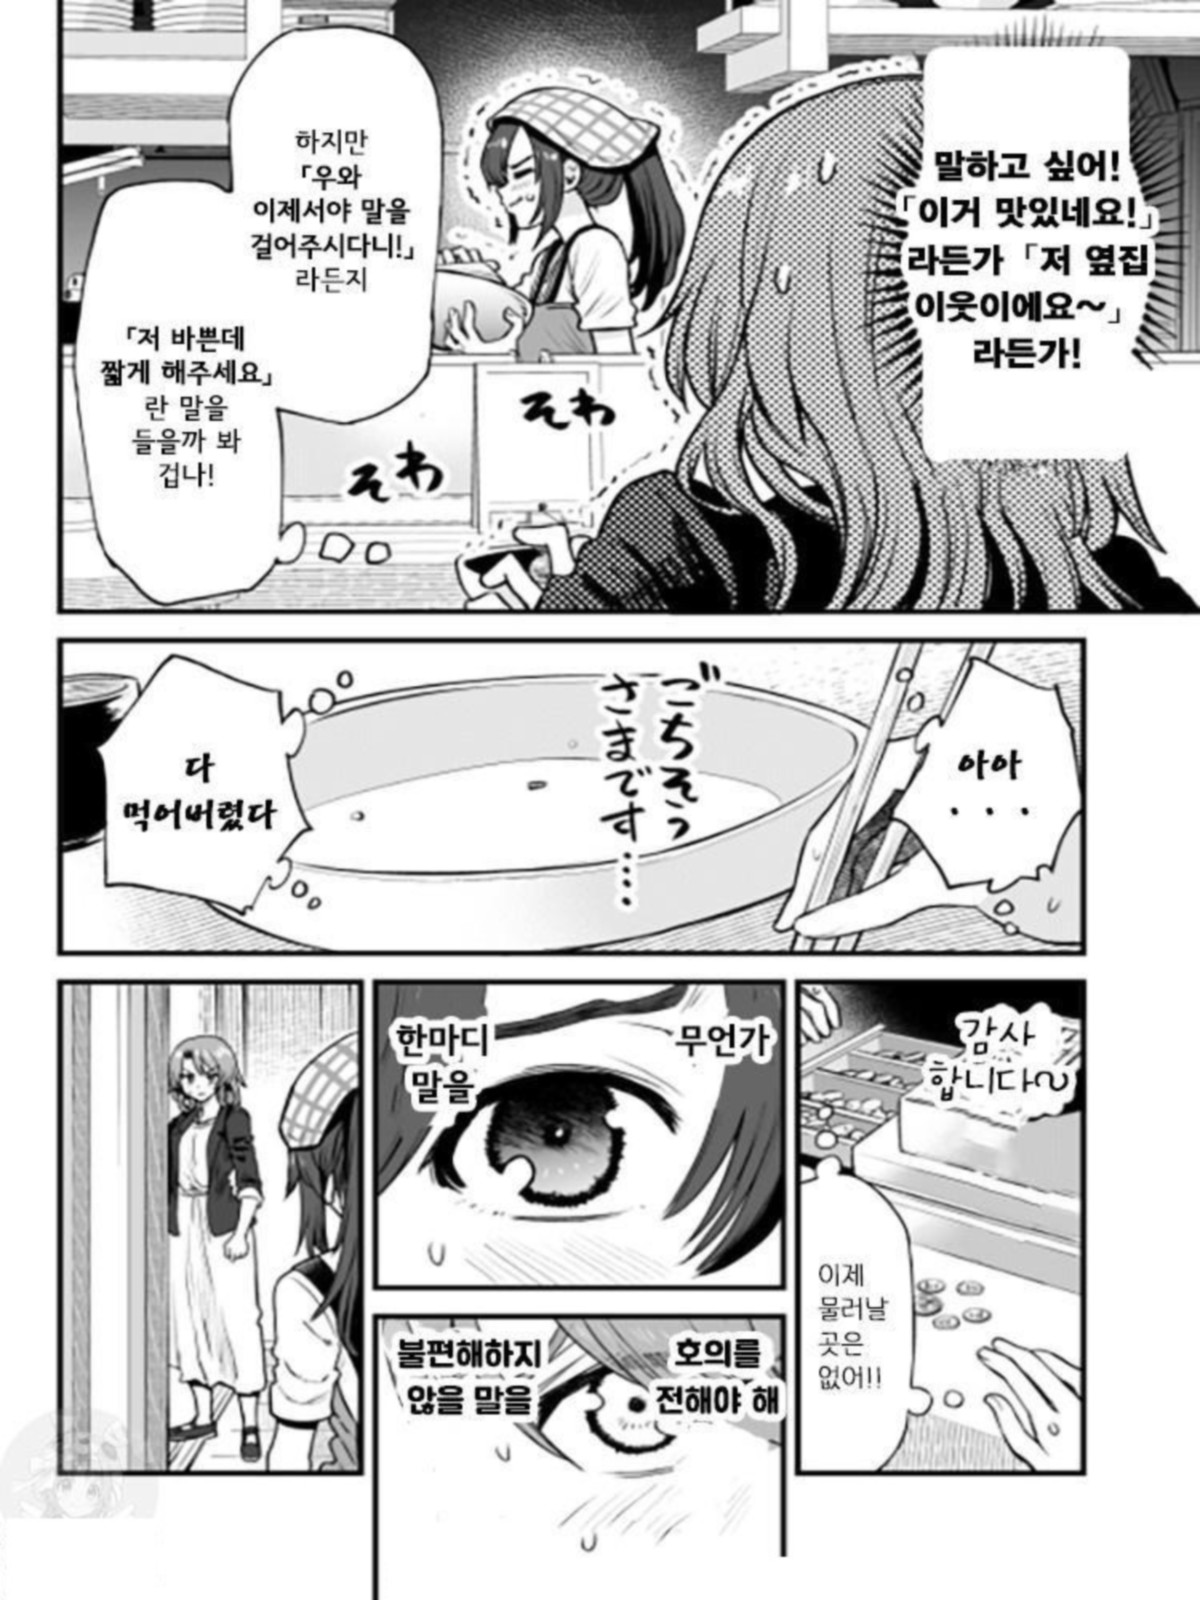 [번역] 쿠치베타 식당 1-27[0412]